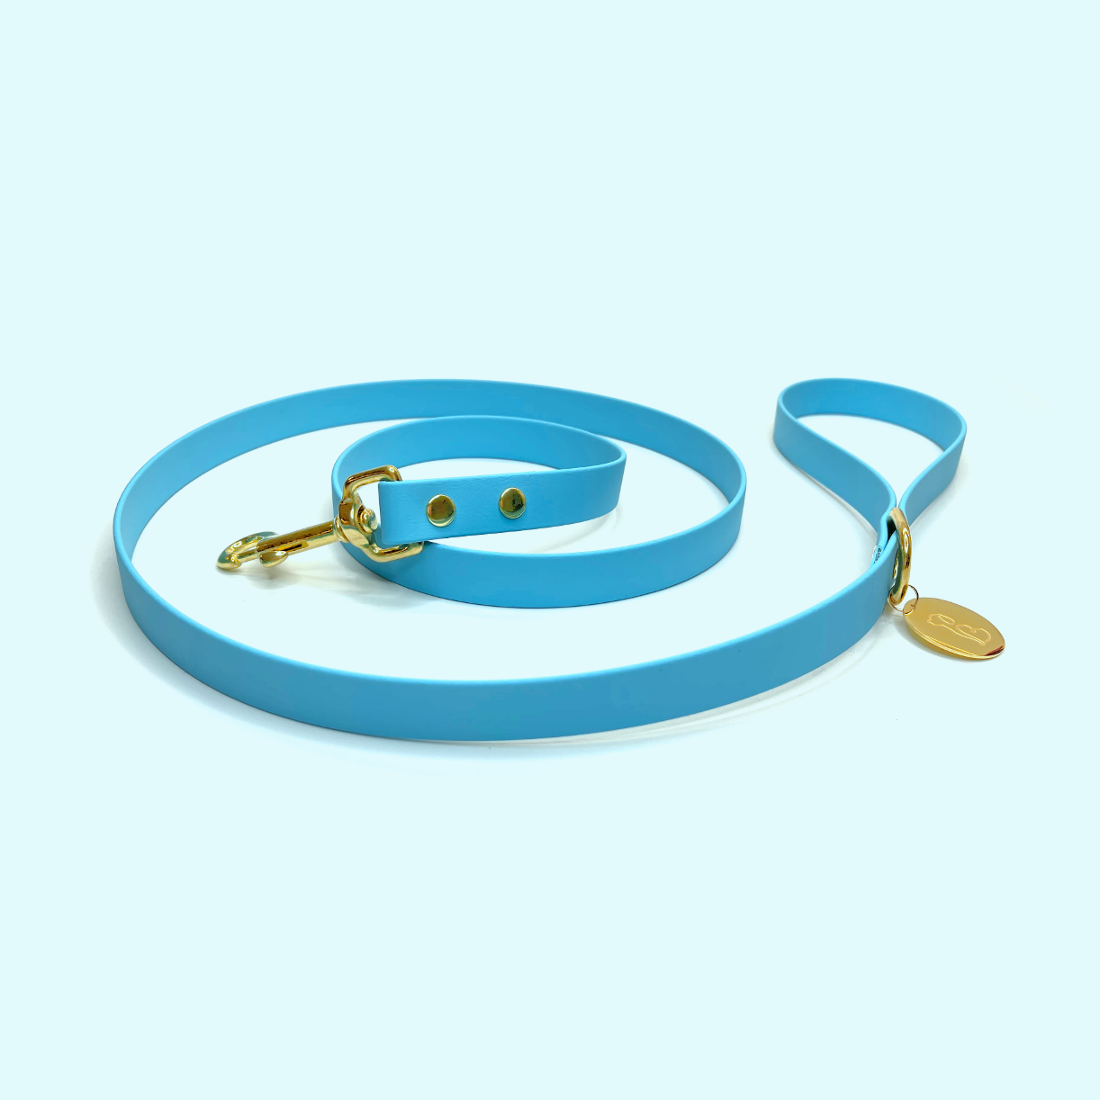 Aquamarine leash